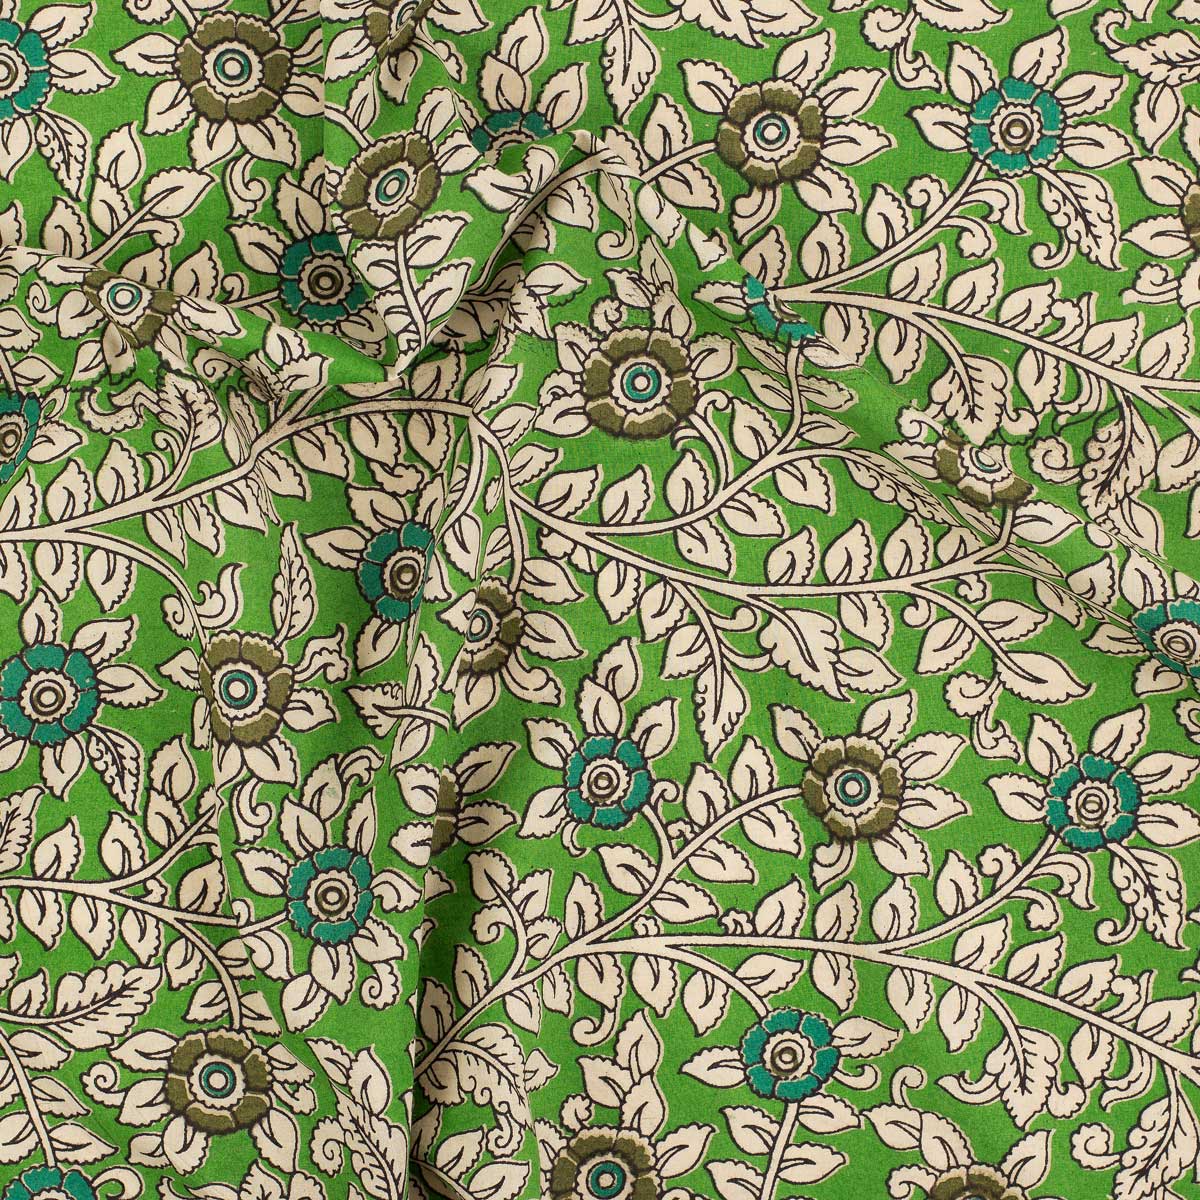 FLORA Fabric, no1